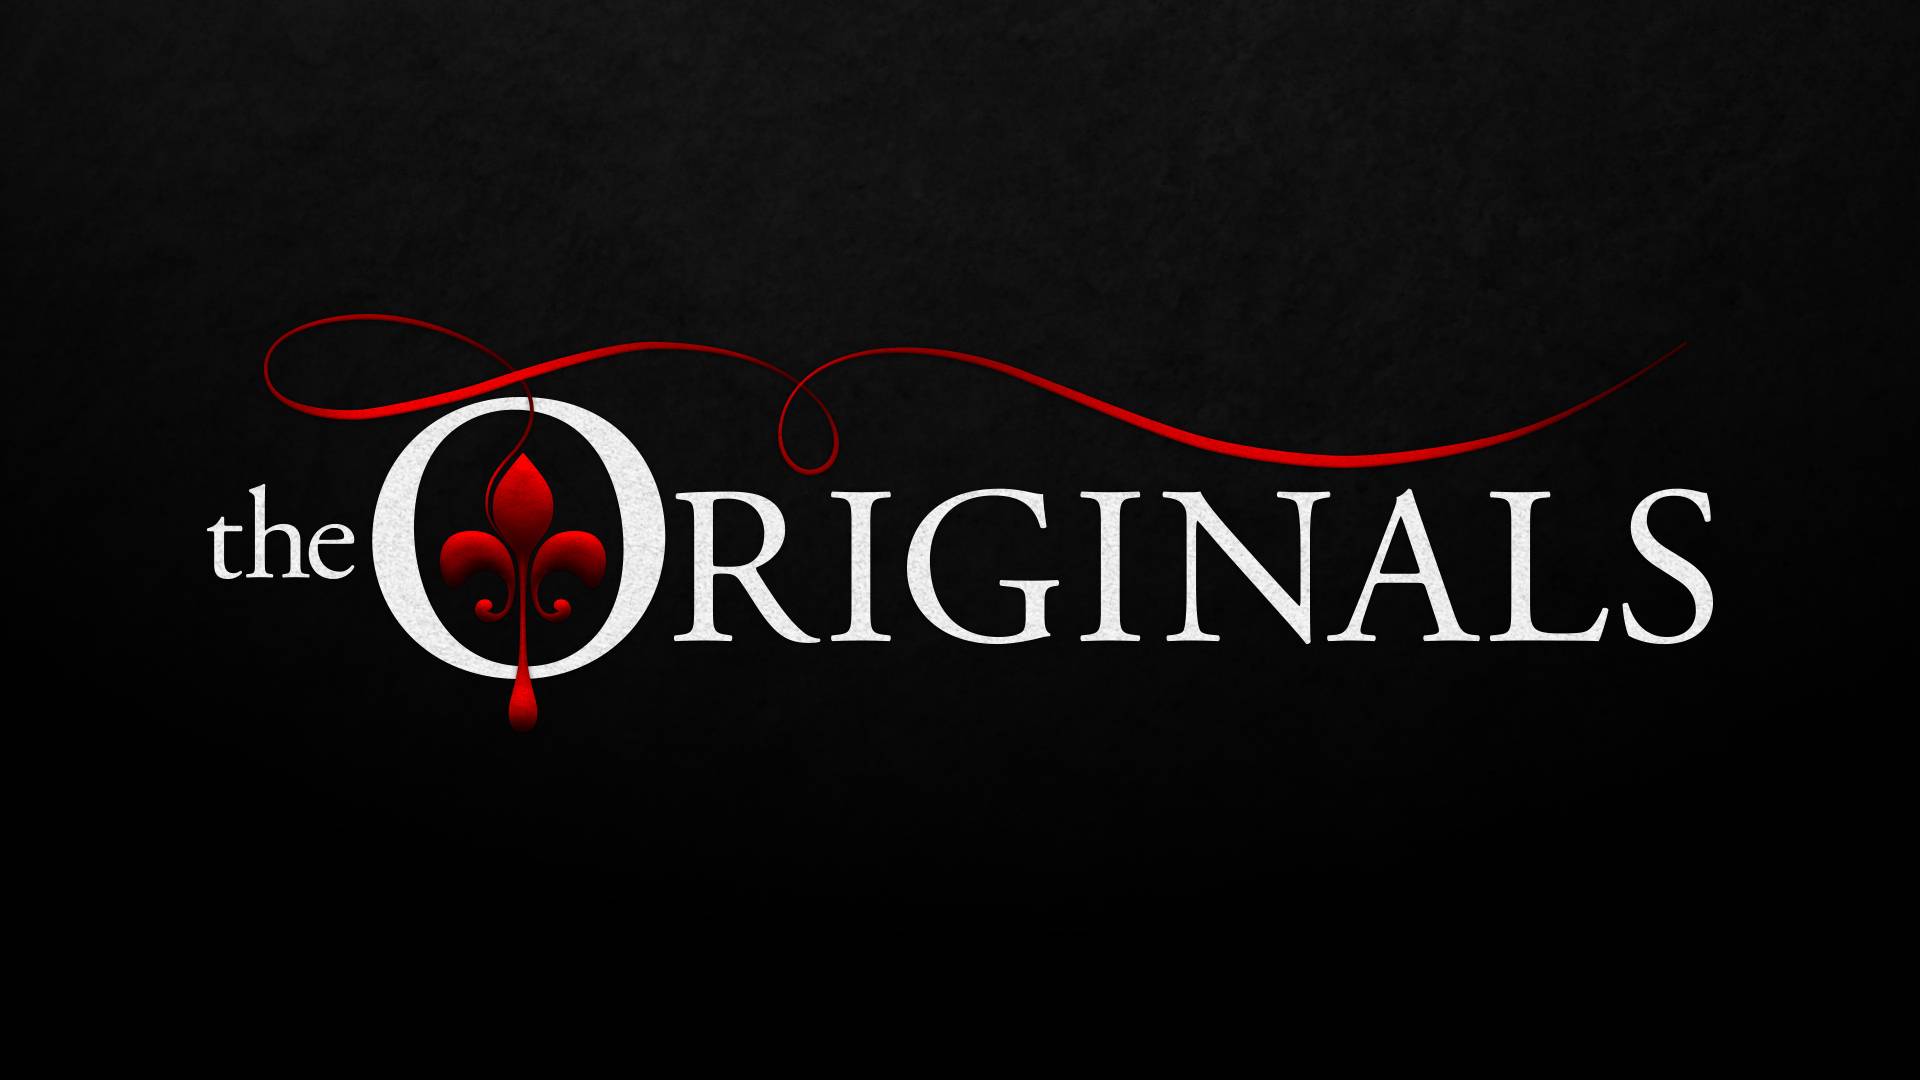 The Originals Logo Picture